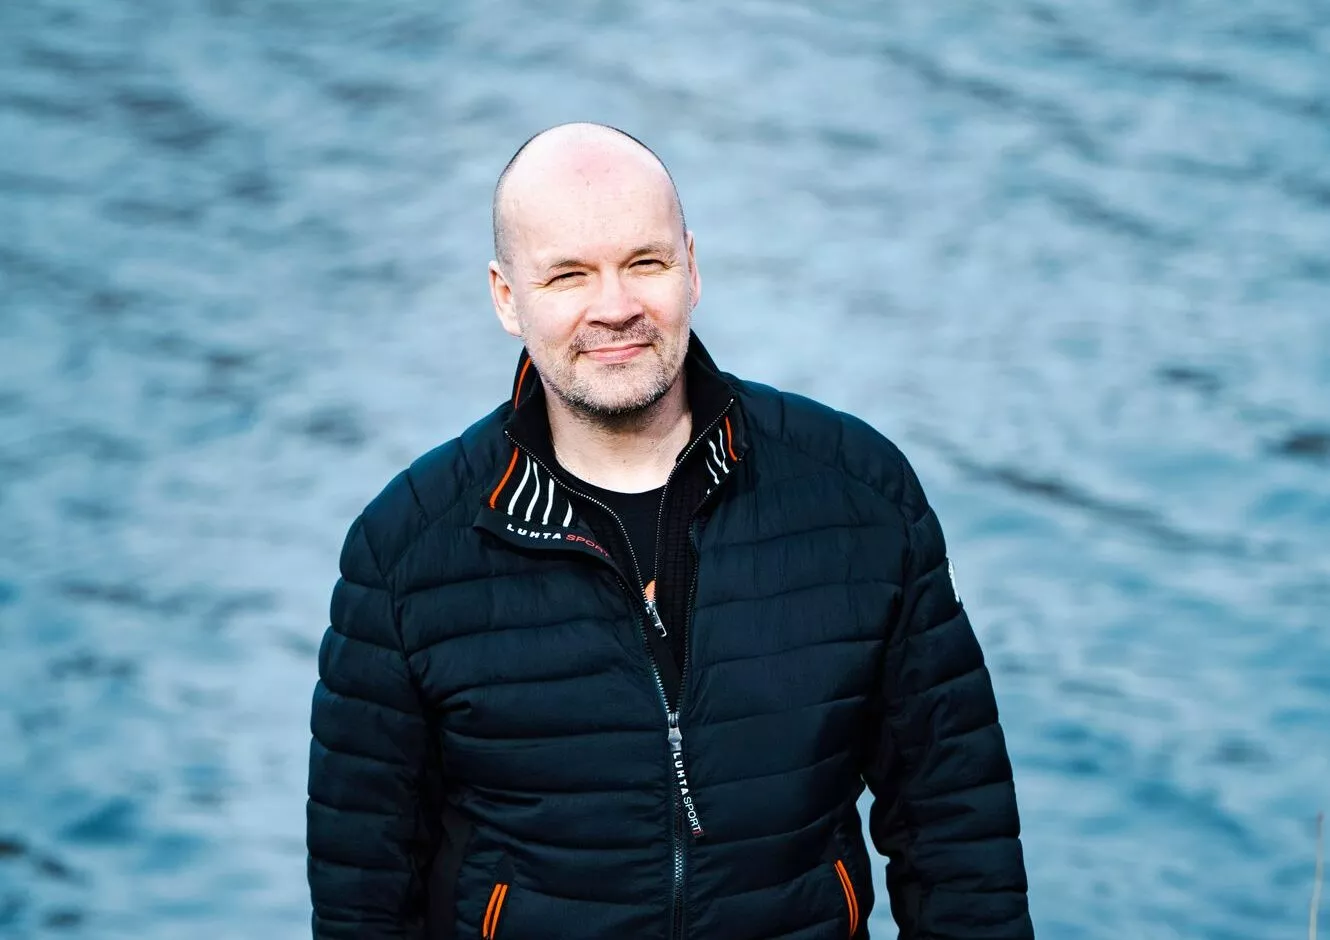 Mökki Inarinjärven rannalla on professori Jarno Valkoselle hyvin tärkeä paikka. <span class="typography__copyright">Kuva: Jouni Porsanger</span>